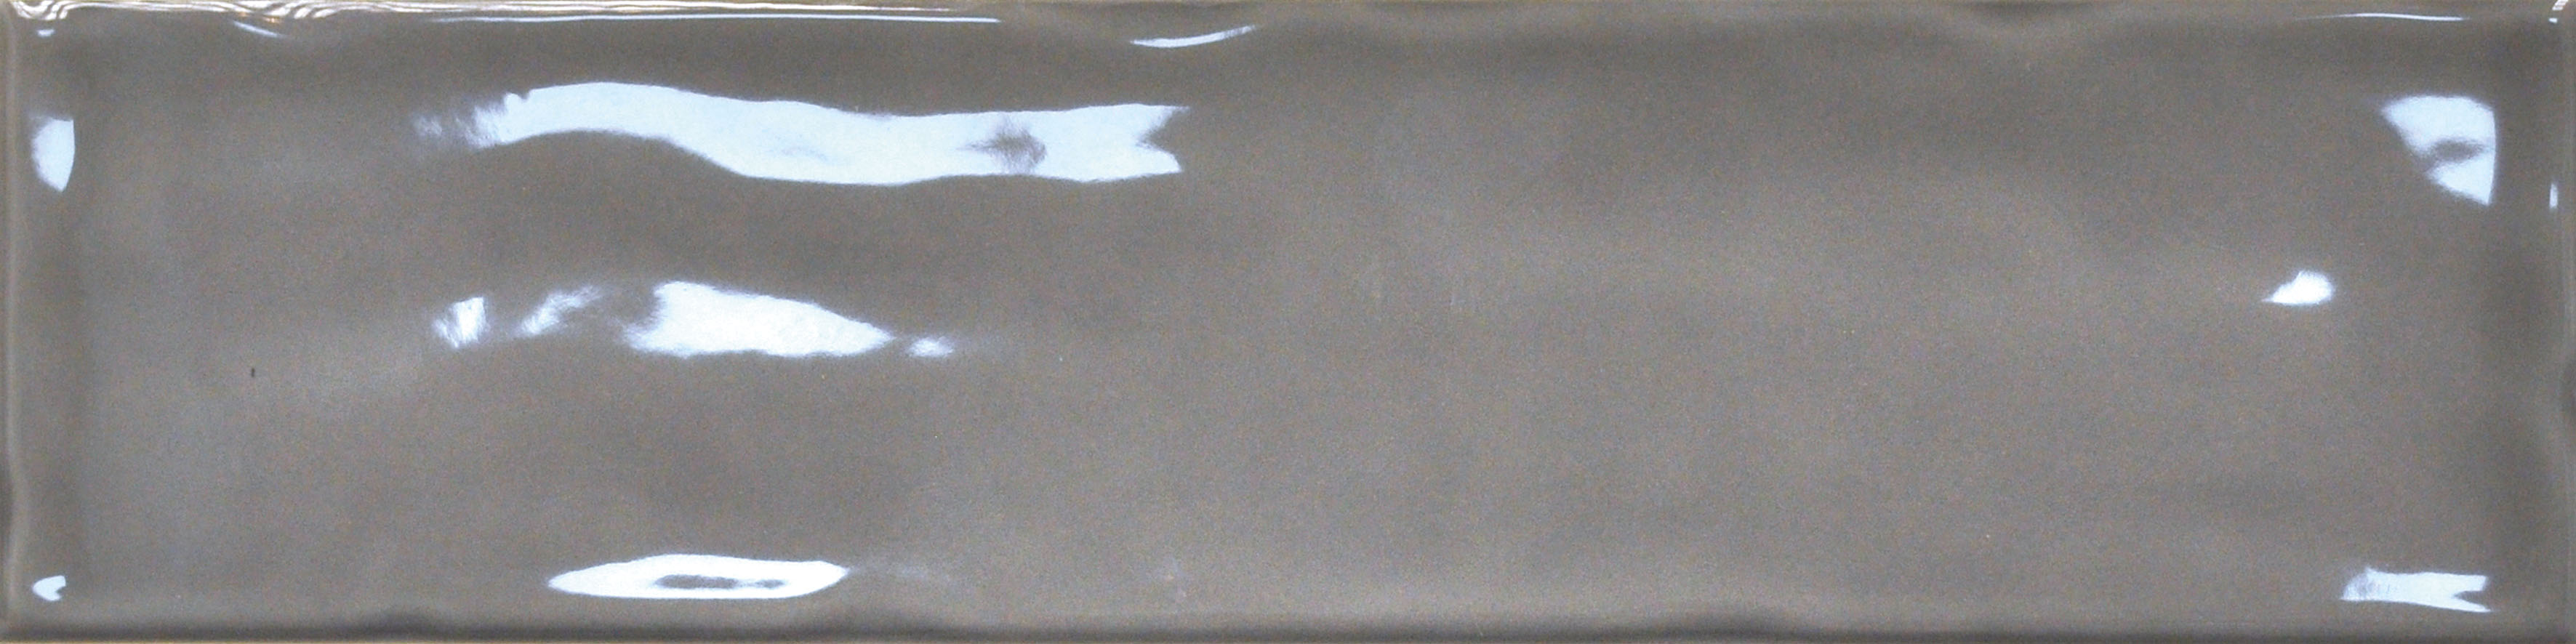 Catalea Gres Tälberg Metrofliesen Anthrazit glänzend 7,5x30 cm 